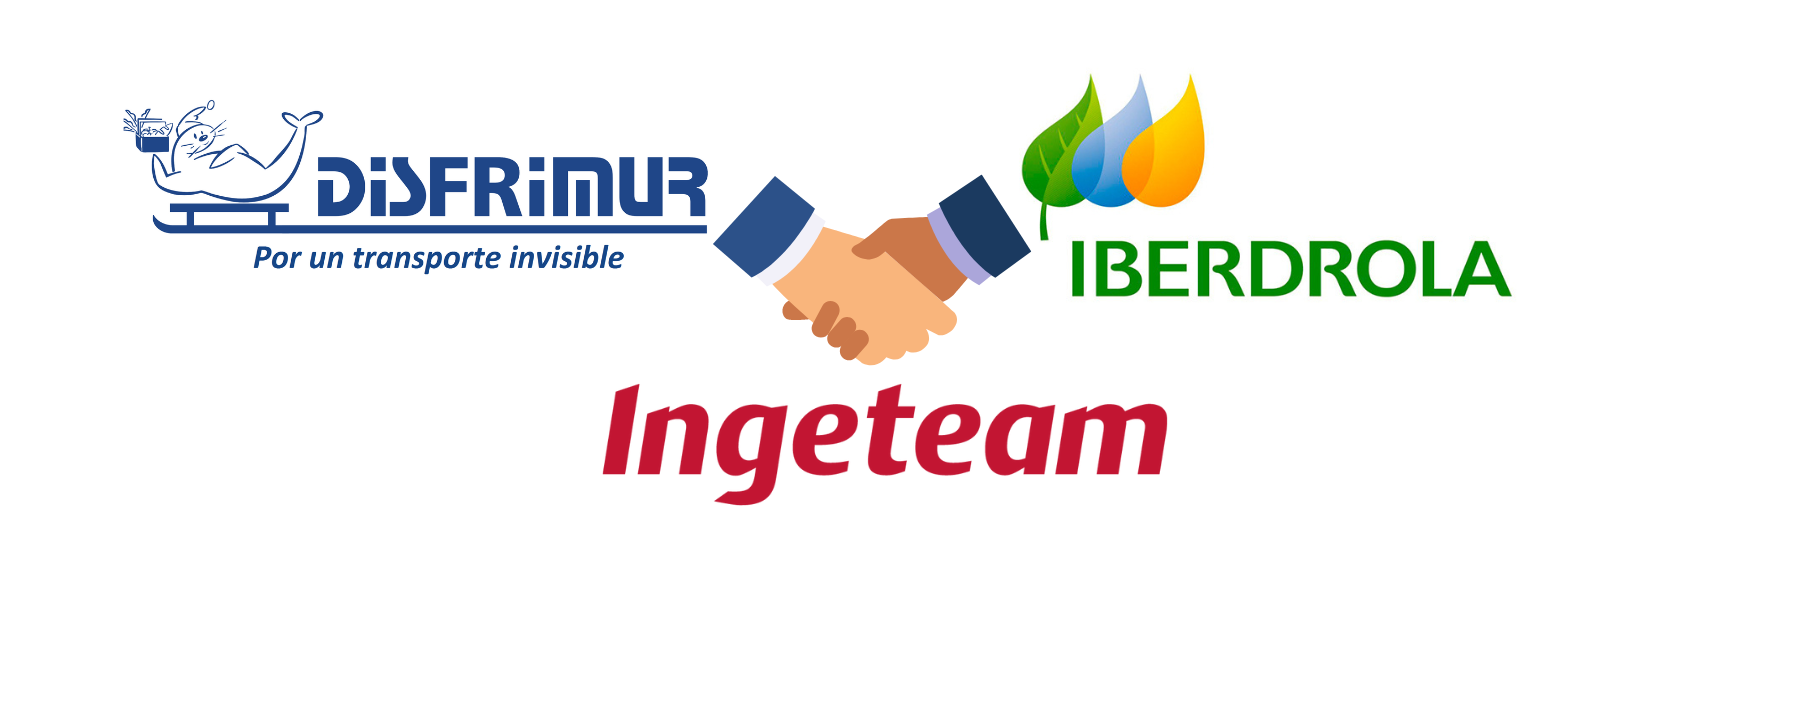 Nueva colaboración entre Iberdrola, Disfrimur e Ingeteam.